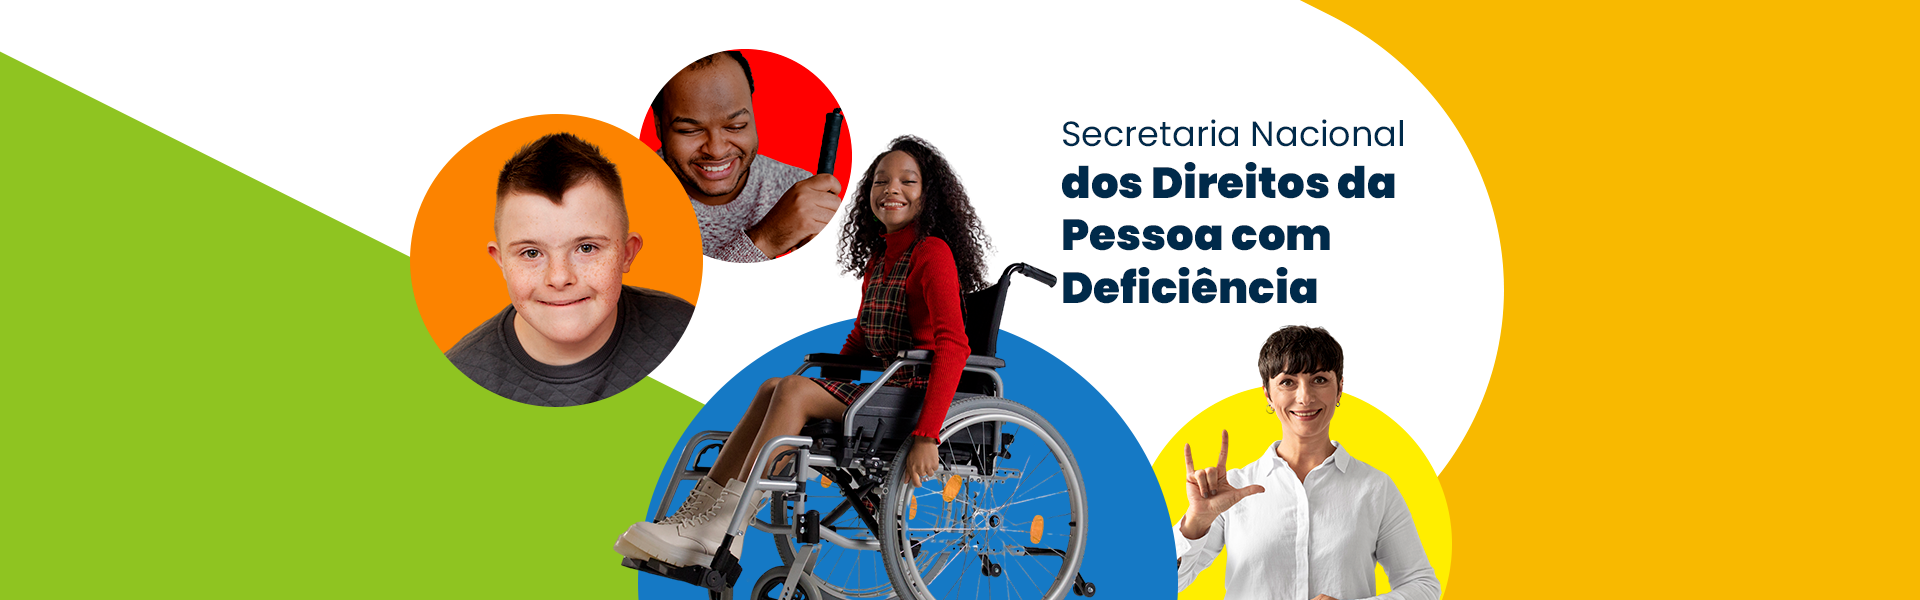 Banner retangular com a imagem pessoas com deficiência. Imagem contém cores em azul, vermelho, laranja e ver. Texto da imagem: Secretaria Nacional dos Direitos da Pessoa com Deficiência